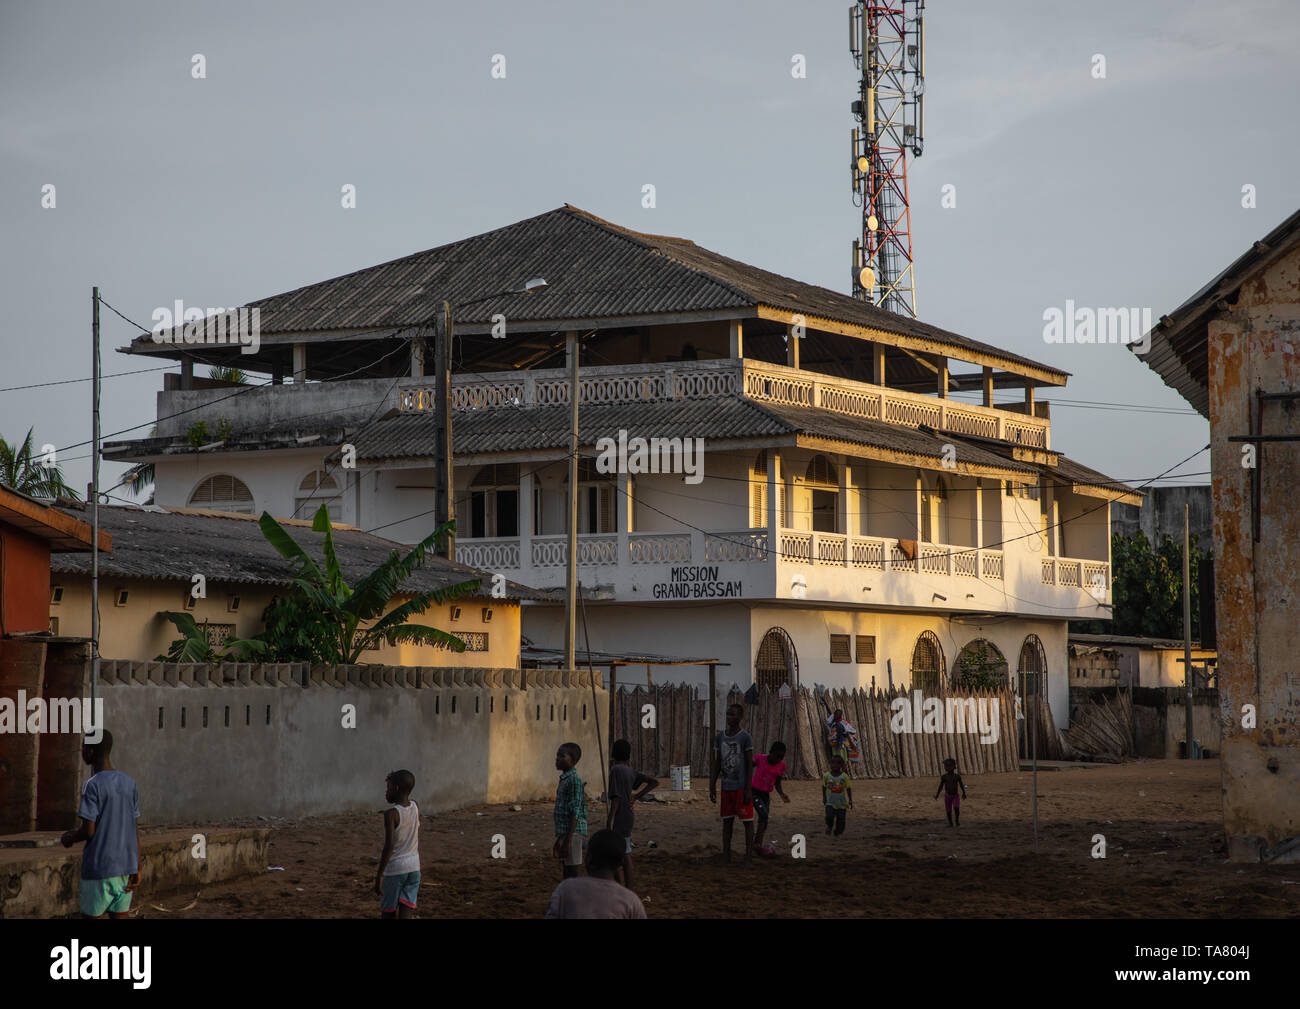 Ancien bâtiment colonial français dans le domaine du patrimoine mondial de l'UNESCO, Sud-Comoé, Grand-Bassam, Côte d'Ivoire Banque D'Images